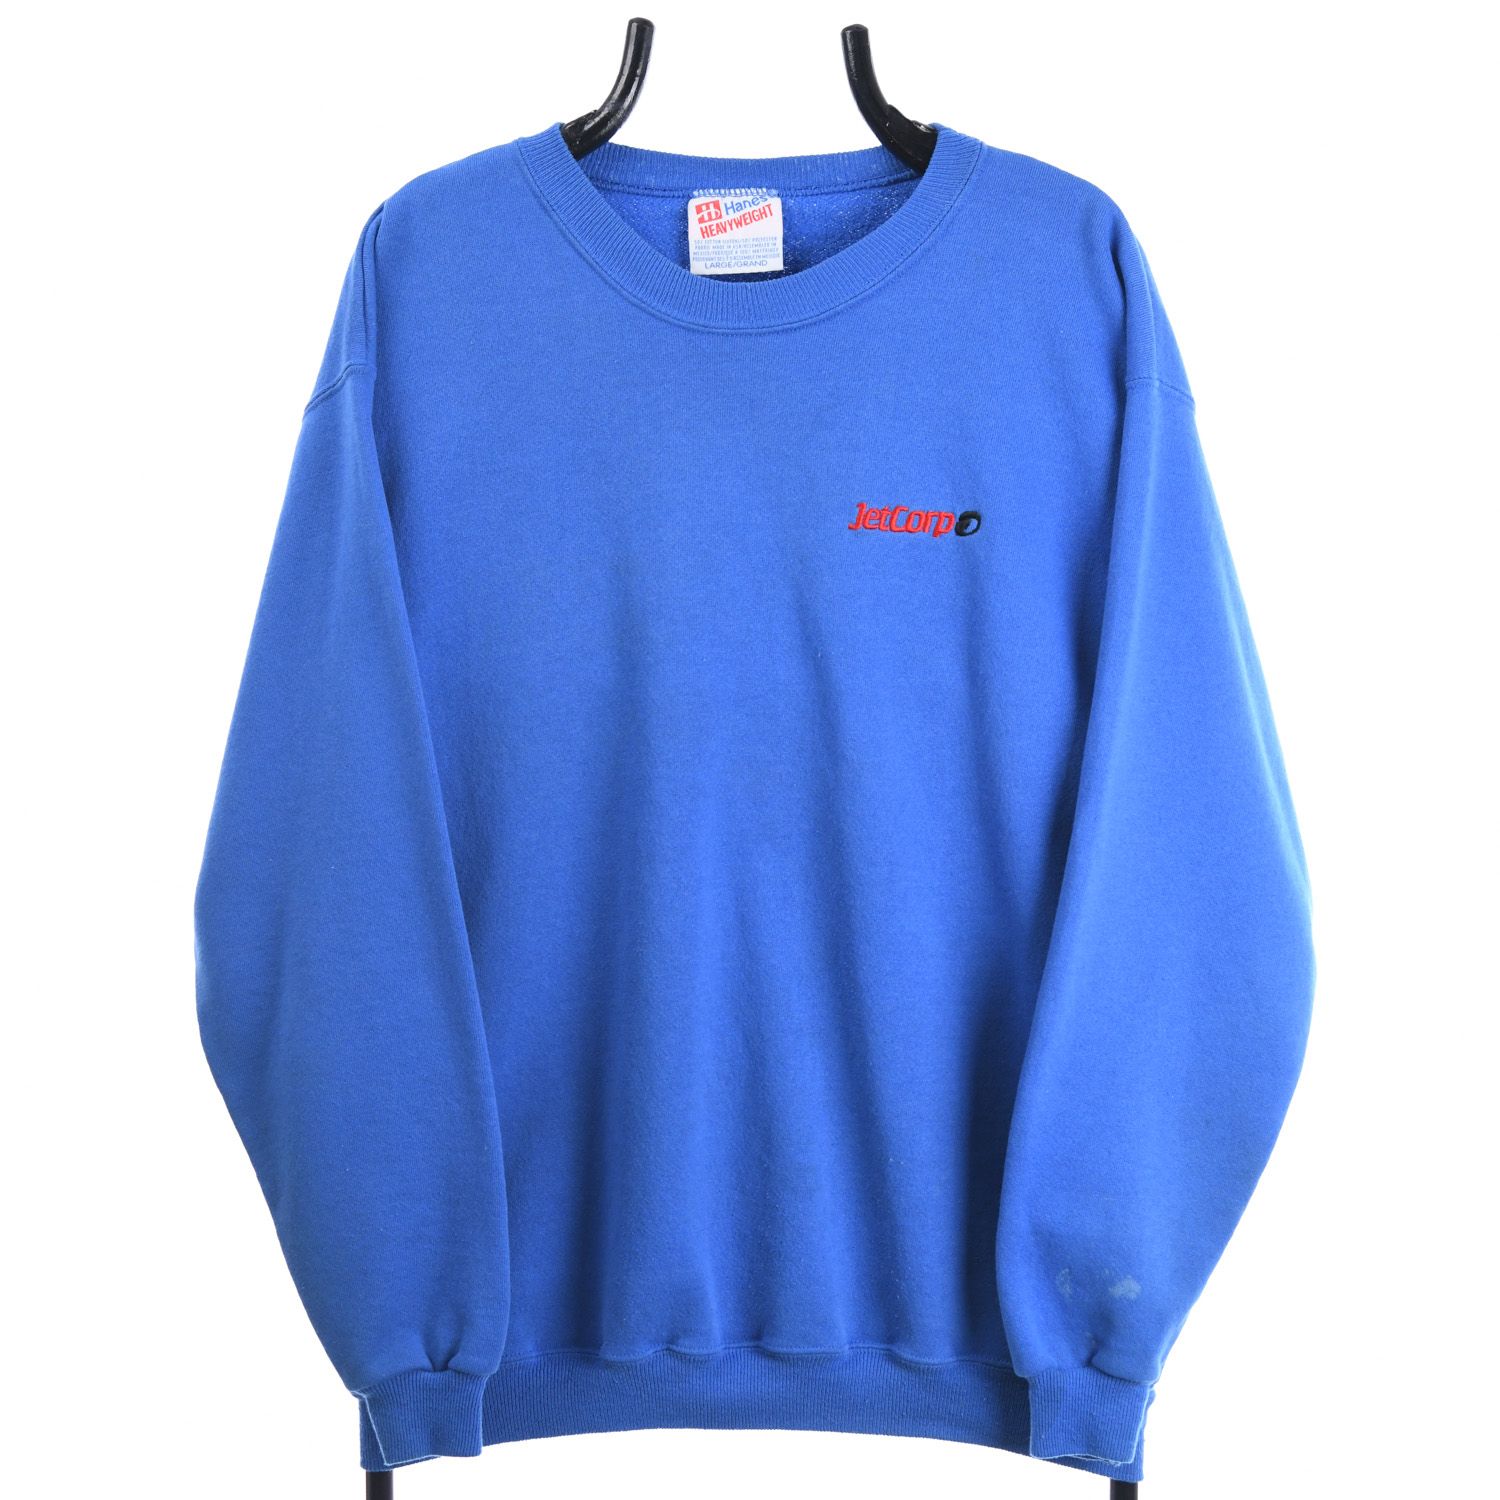 Jetcorp 1990s Sweatshirt